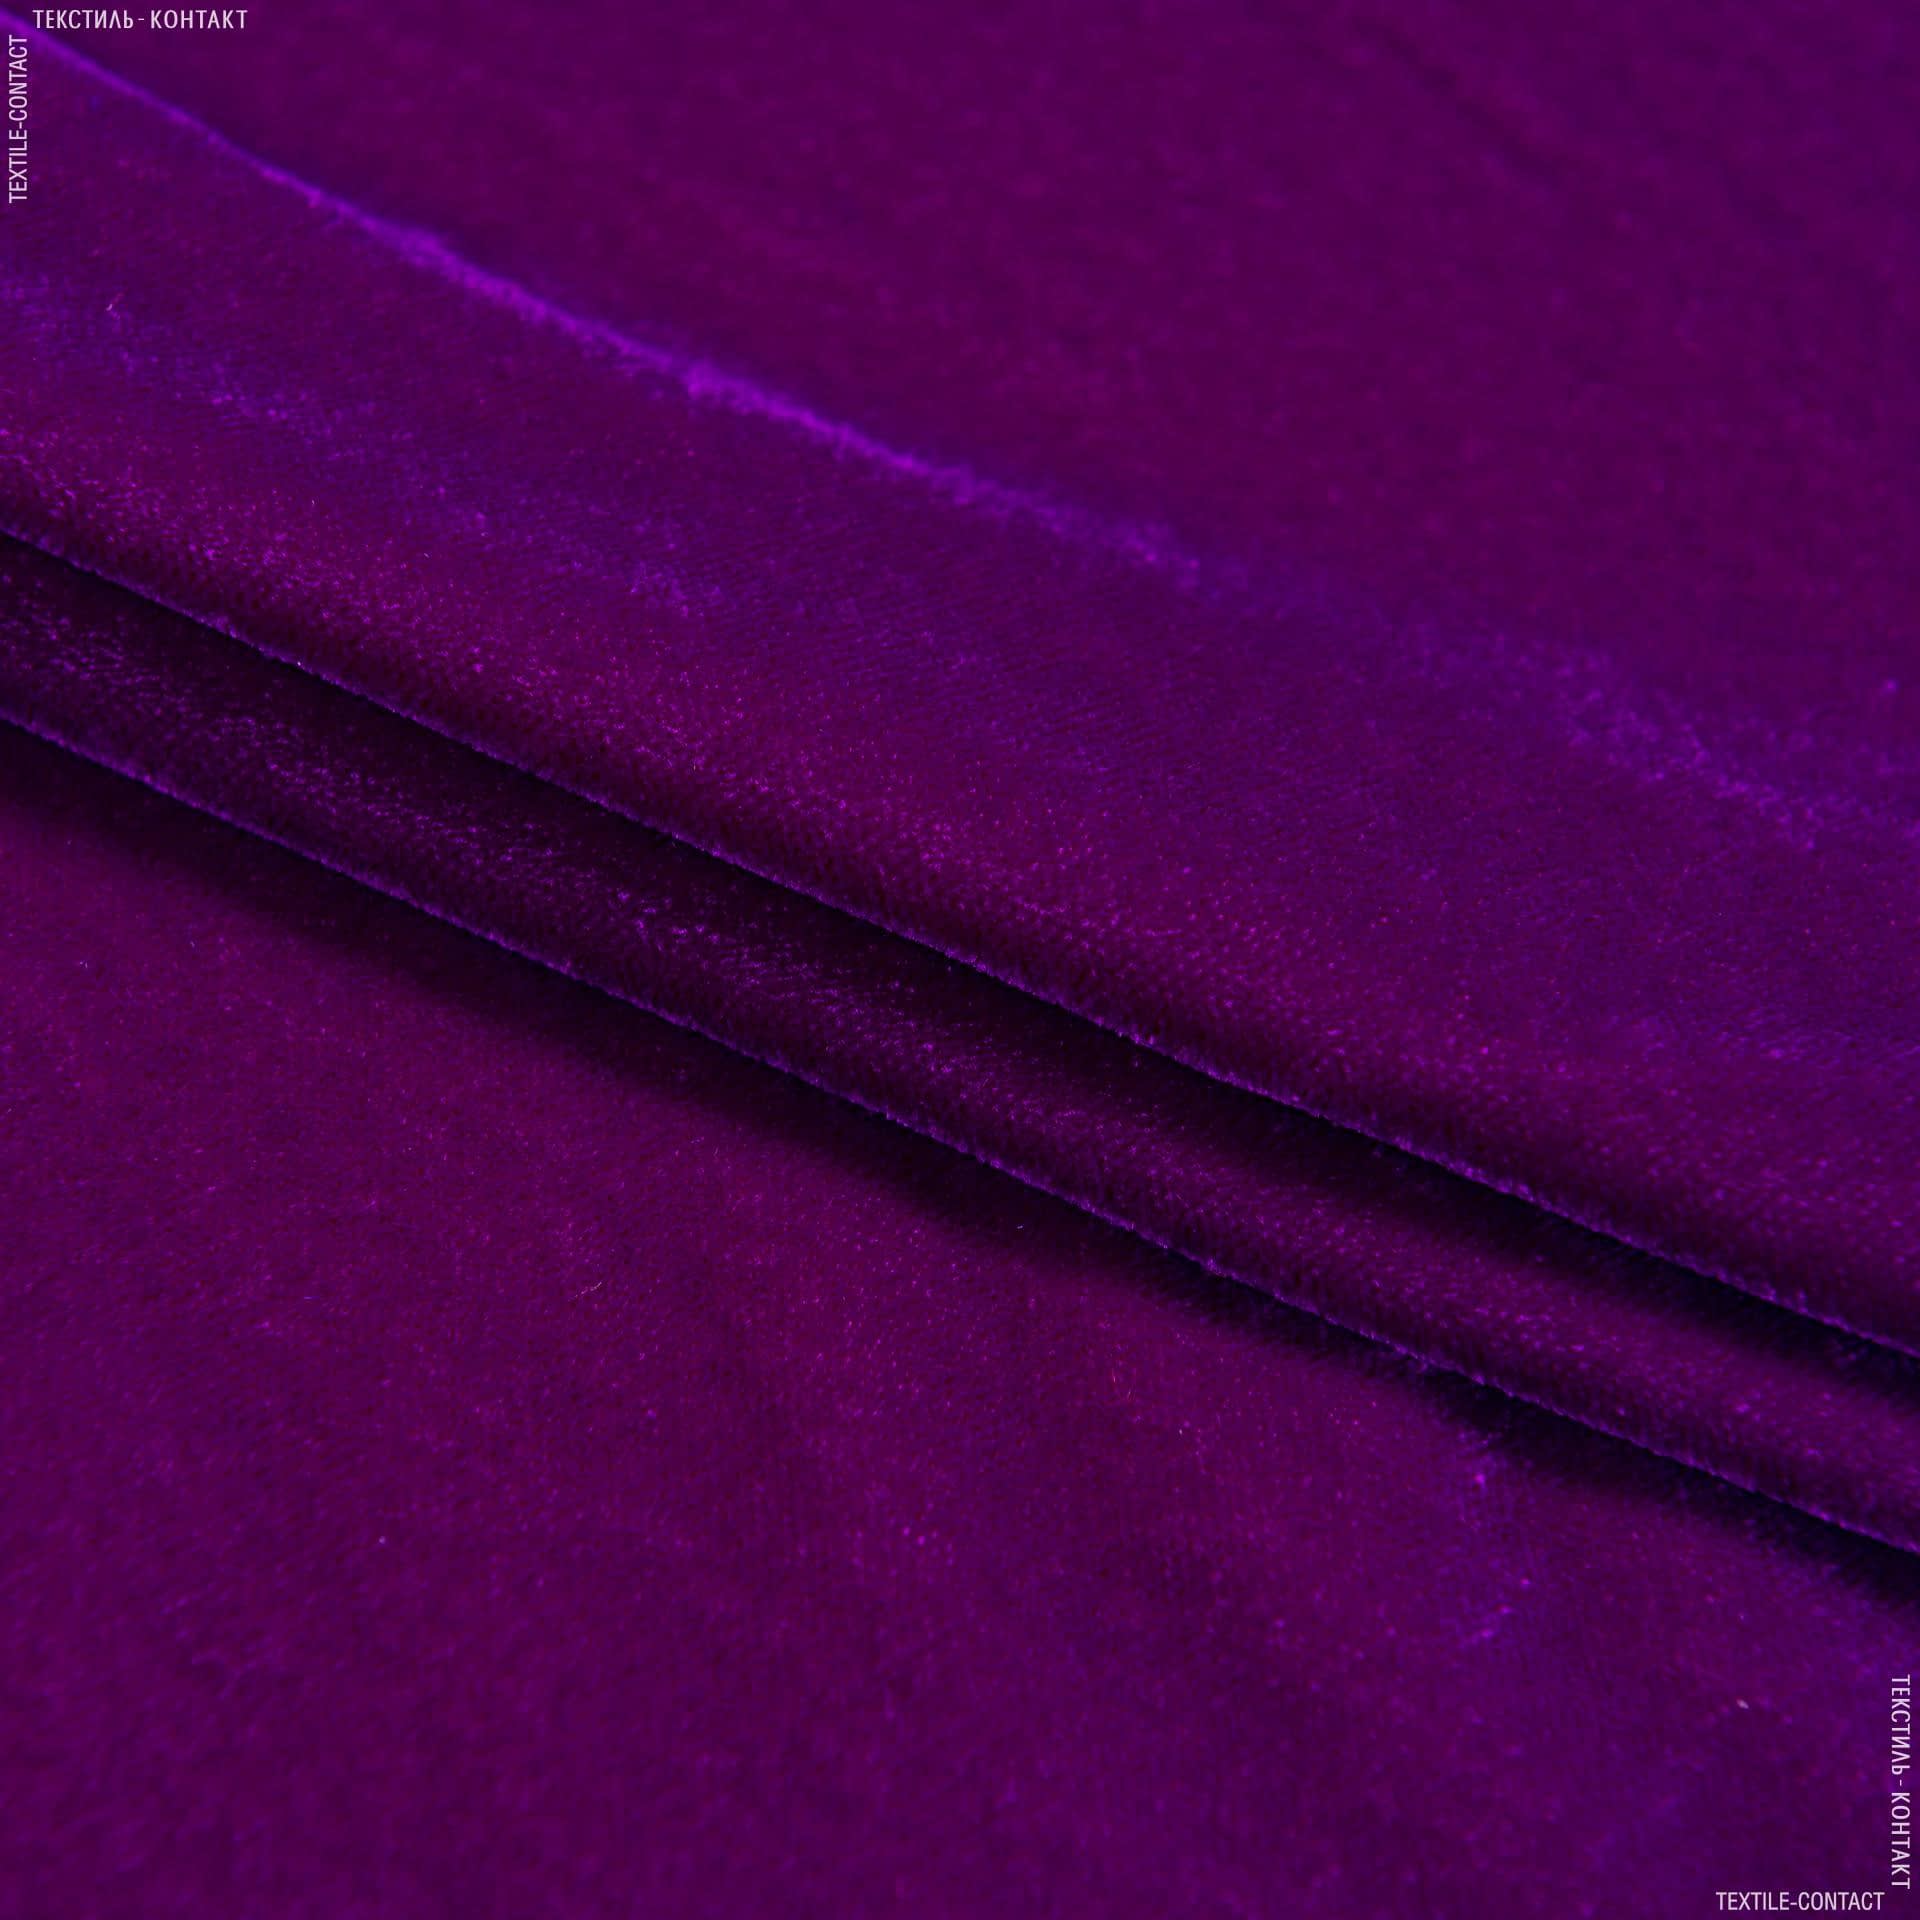 Ткани для платьев - Бархат айс светло-фиолетовый